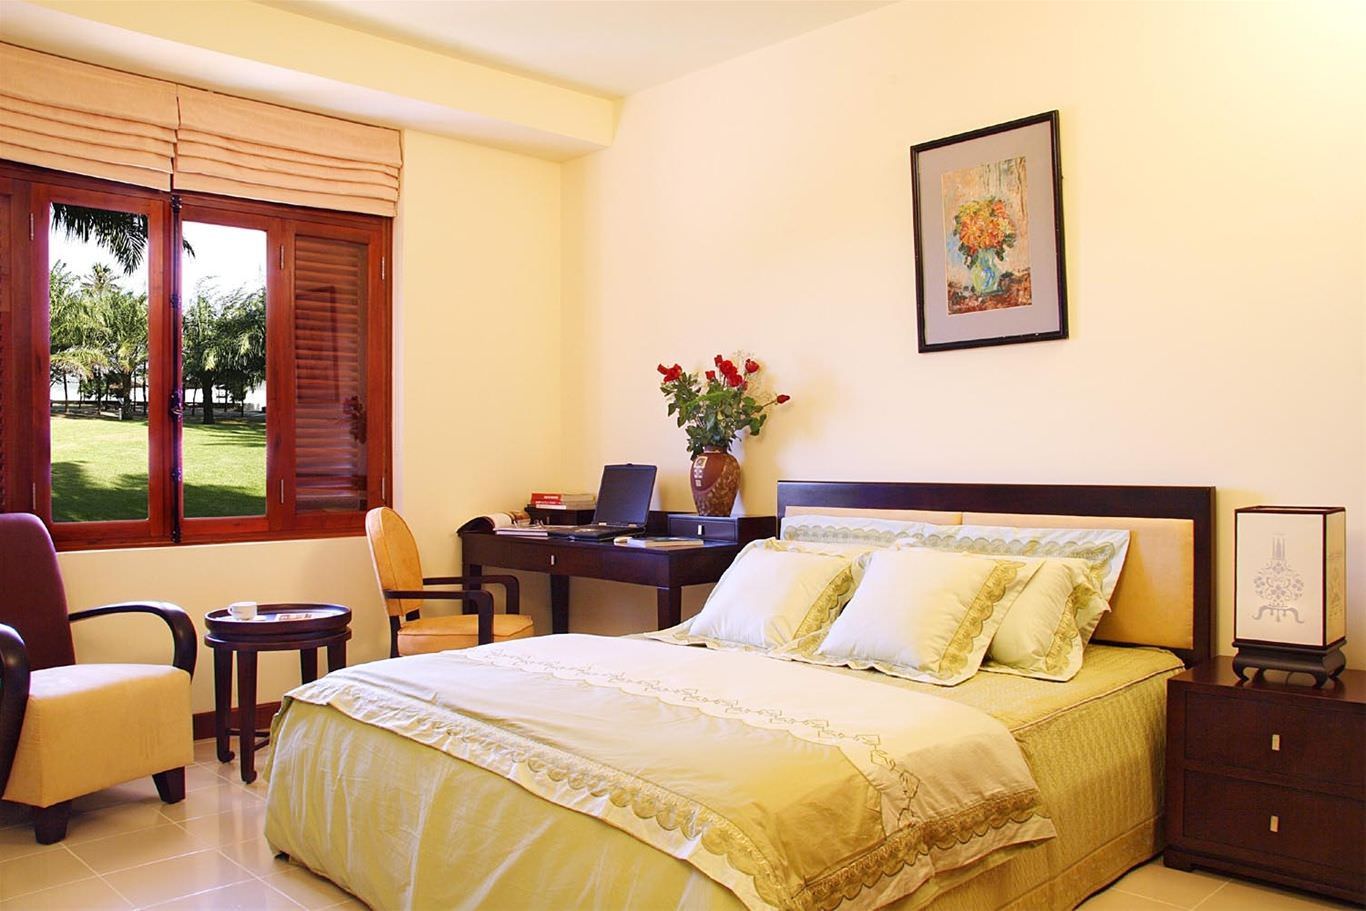 Sơn phòng ngủ màu vàng kem giúp nới rộng không gian phòng ngủ cho 2 vợ chồng